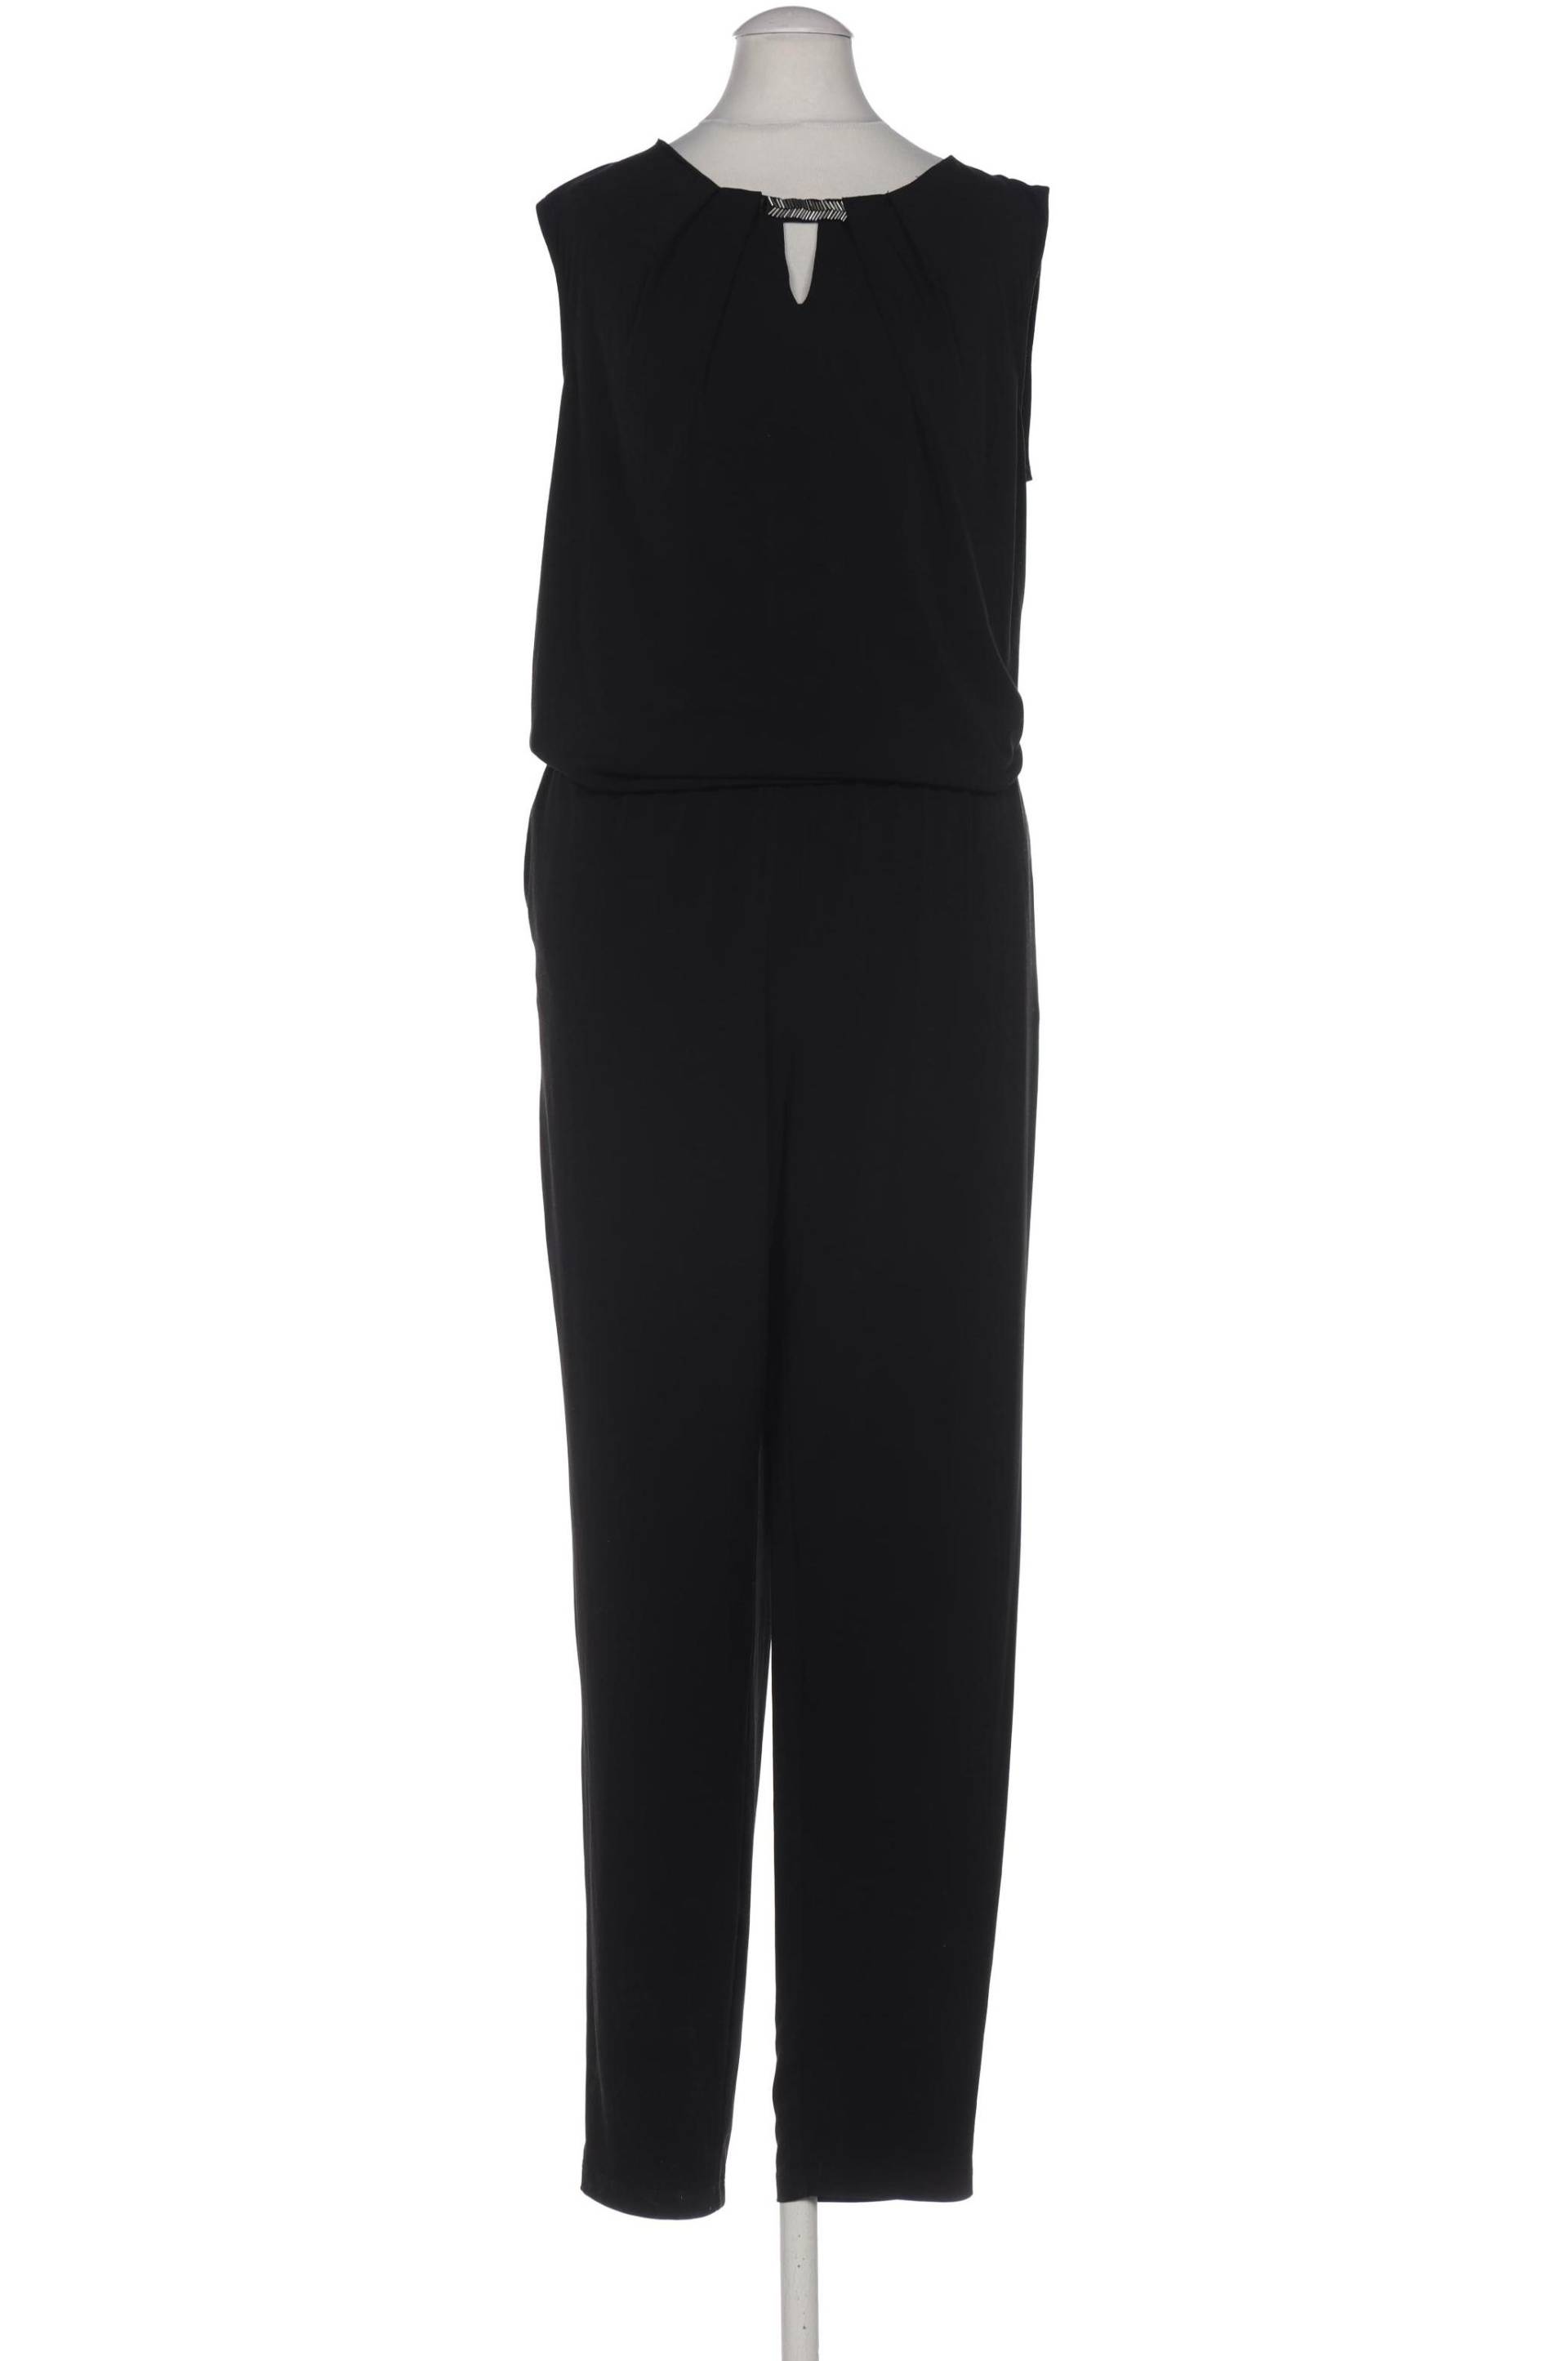 APART Damen Jumpsuit/Overall, schwarz von Apart